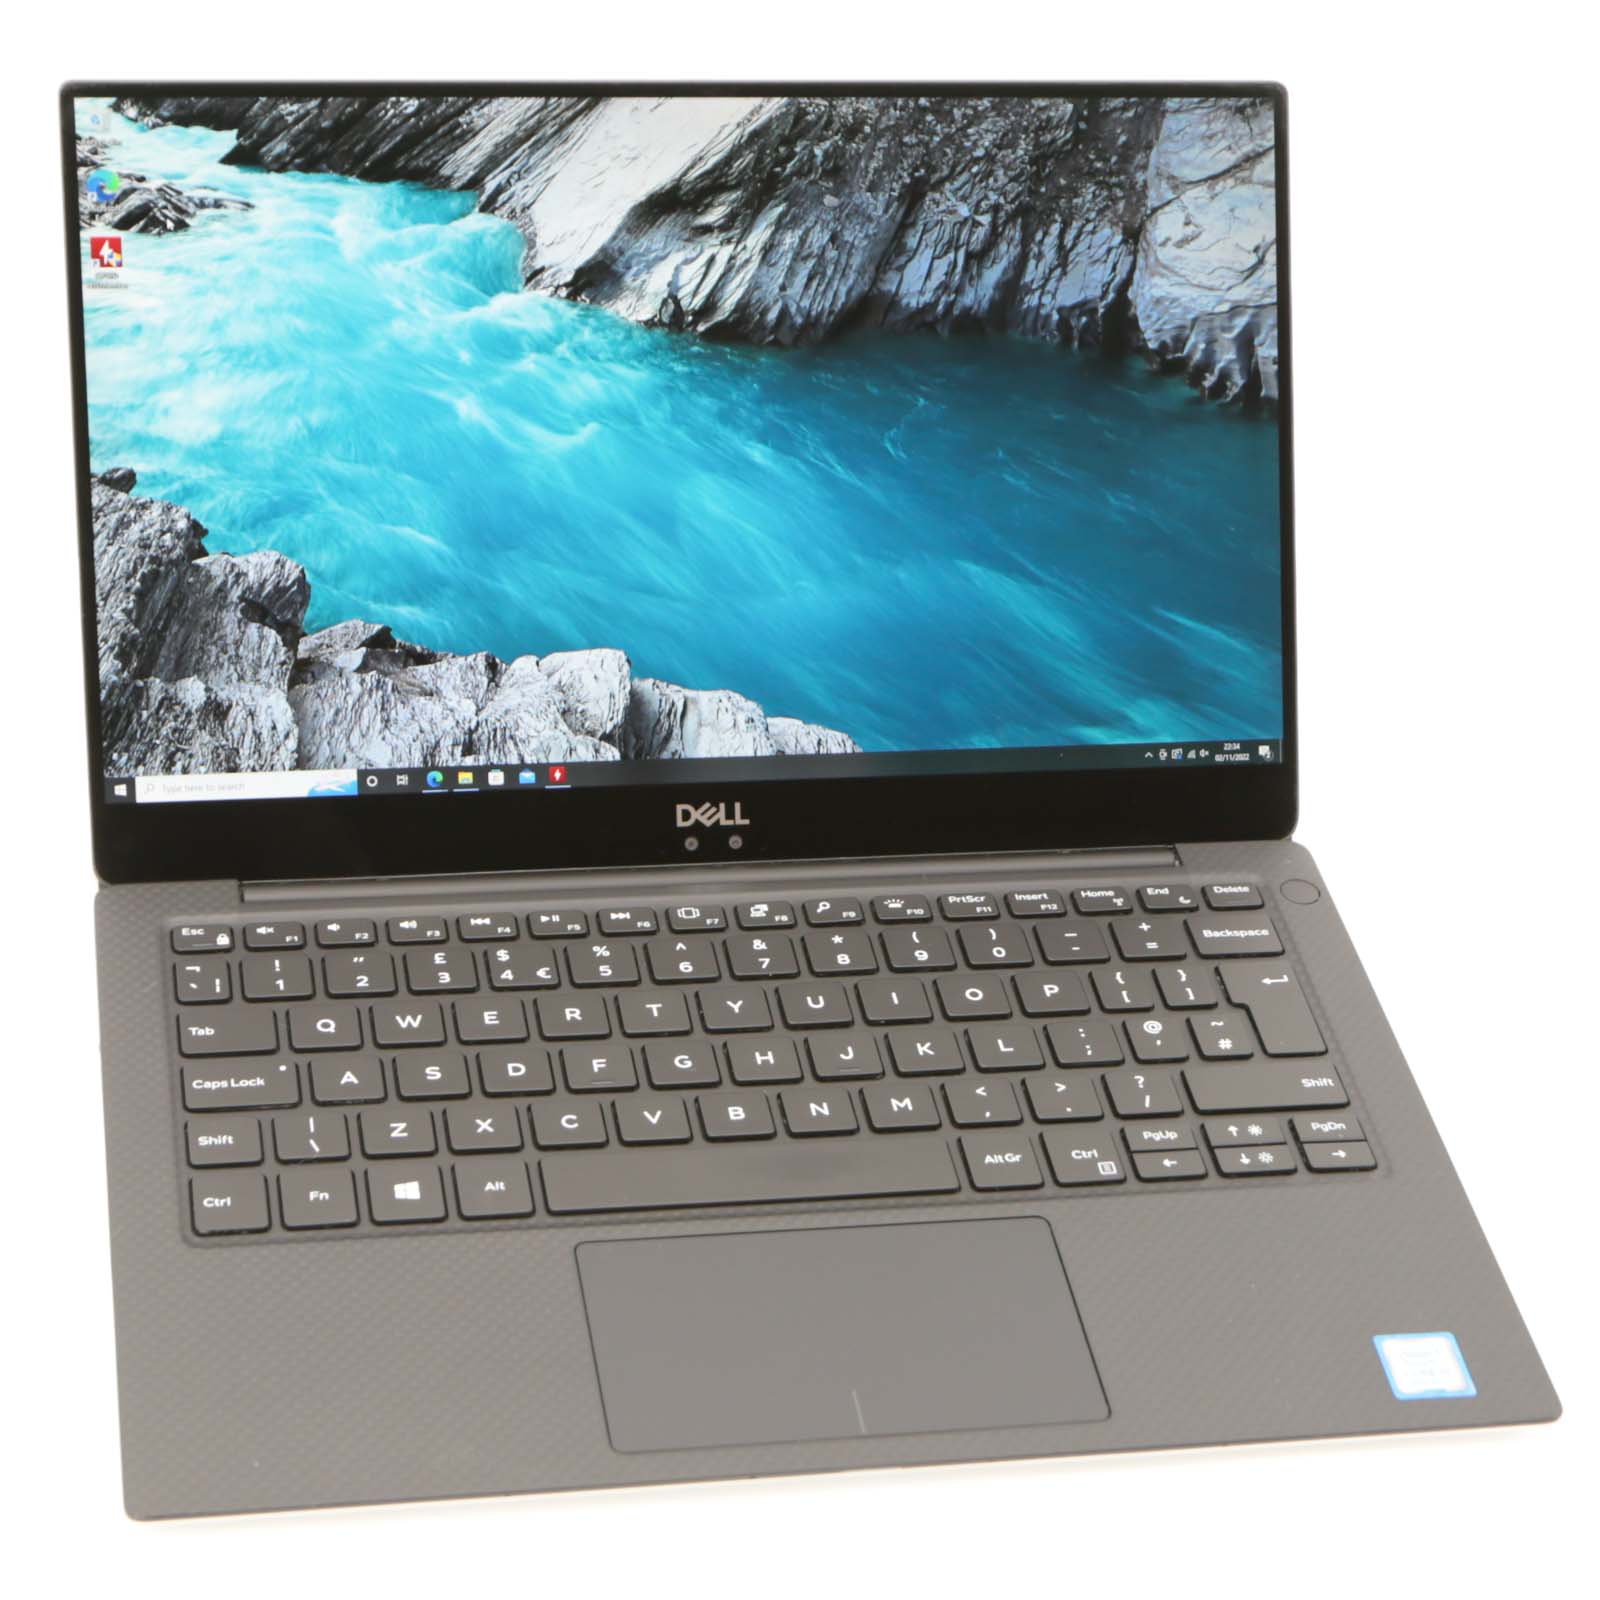 Dell XPS 13 9370 Laptop: Intel Core i5-8250U, 256GB SSD, 8GB RAM ...